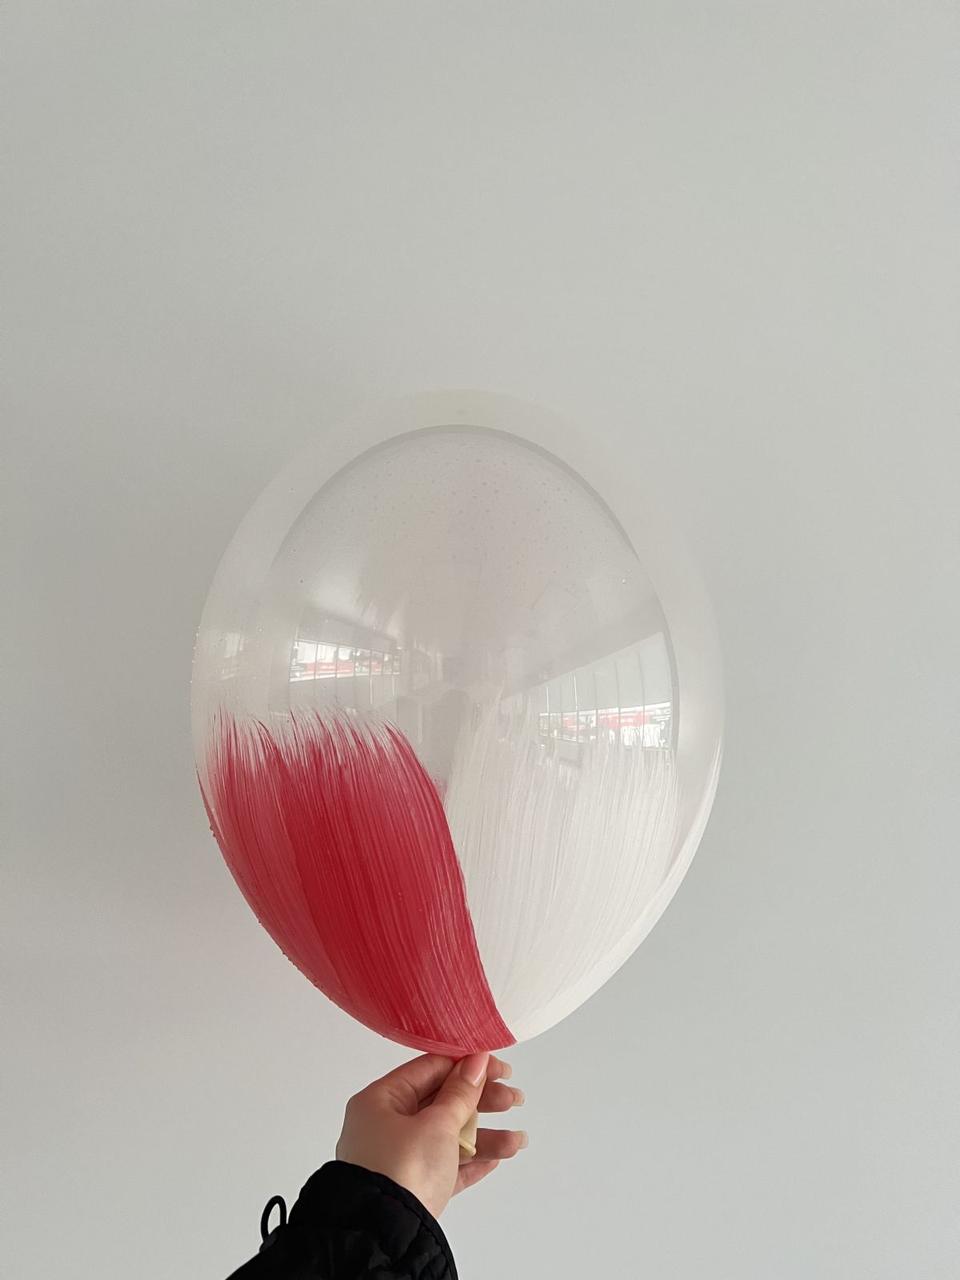 Ексклюзивна латексна кулька прозора з червоно-білим 12"(30см.)  ТМ Balonevi 1шт.